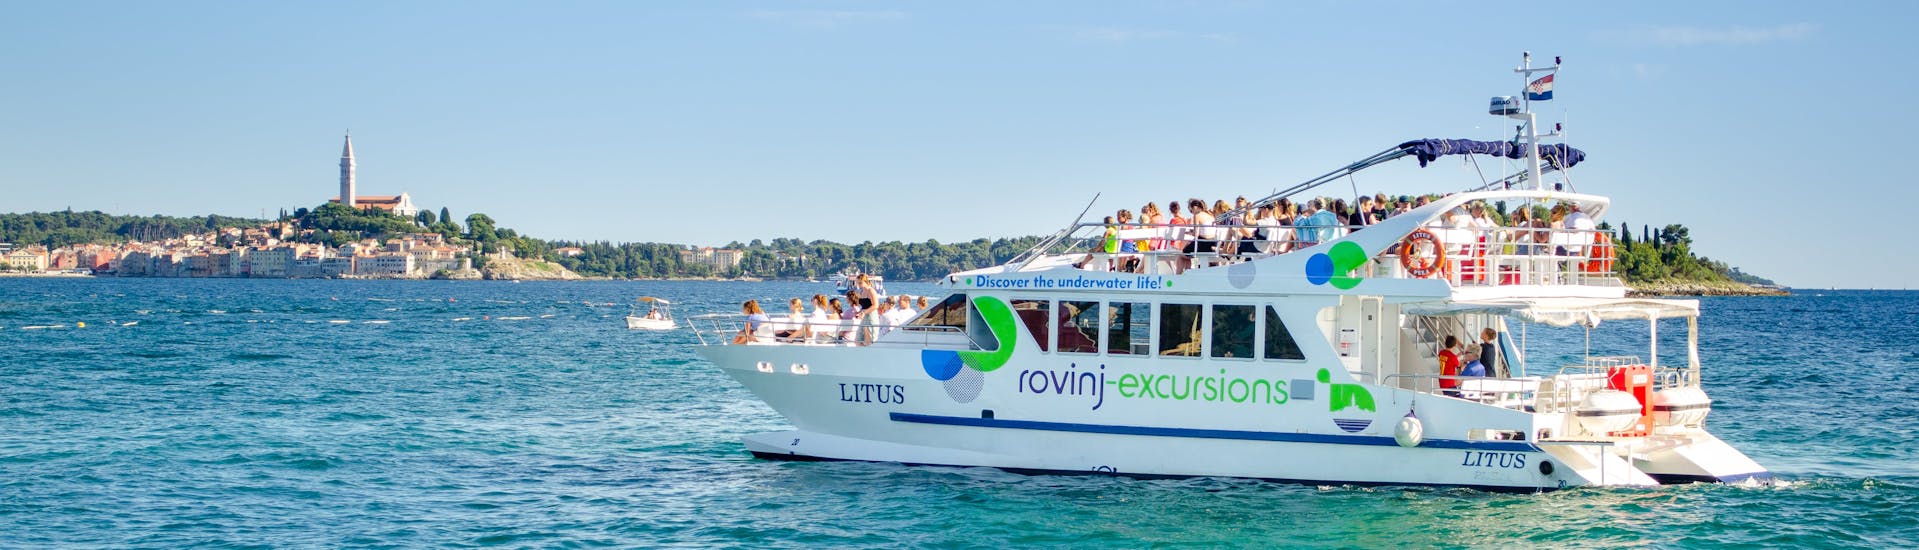 Il catamano LITUS solca le acque cristalline dell'Istria durante laGita in catamarano intorno a Rovigno con soste per nuotare con Rovinj Excursions.